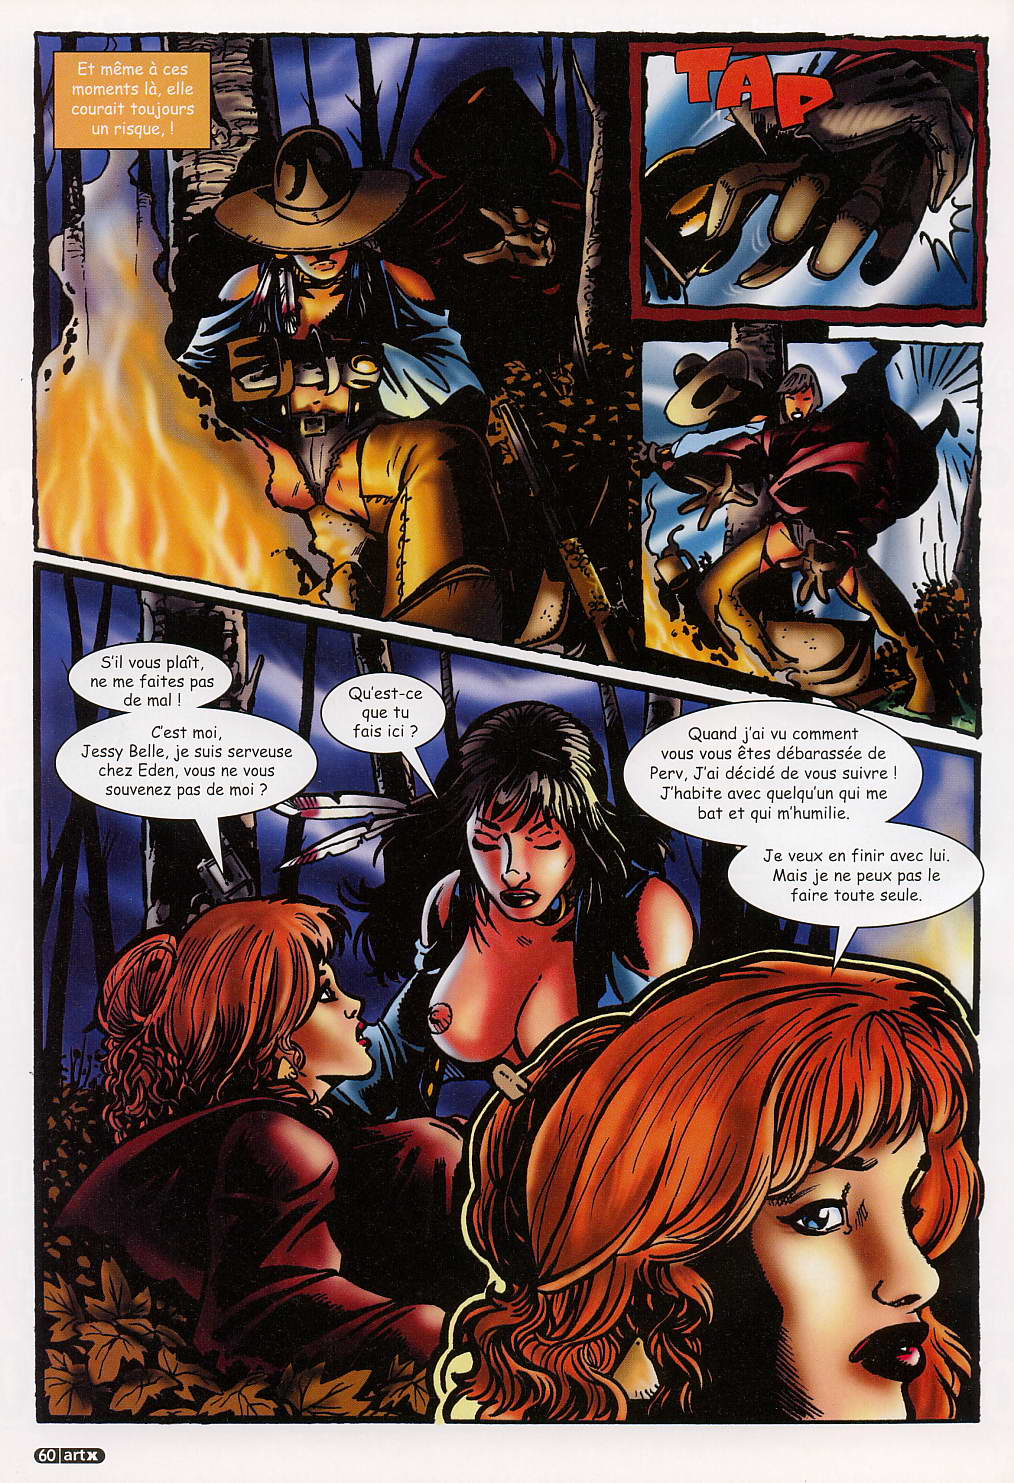 Art X : Les Fantasmes érotiques du hard - Volume 2 numero d'image 51